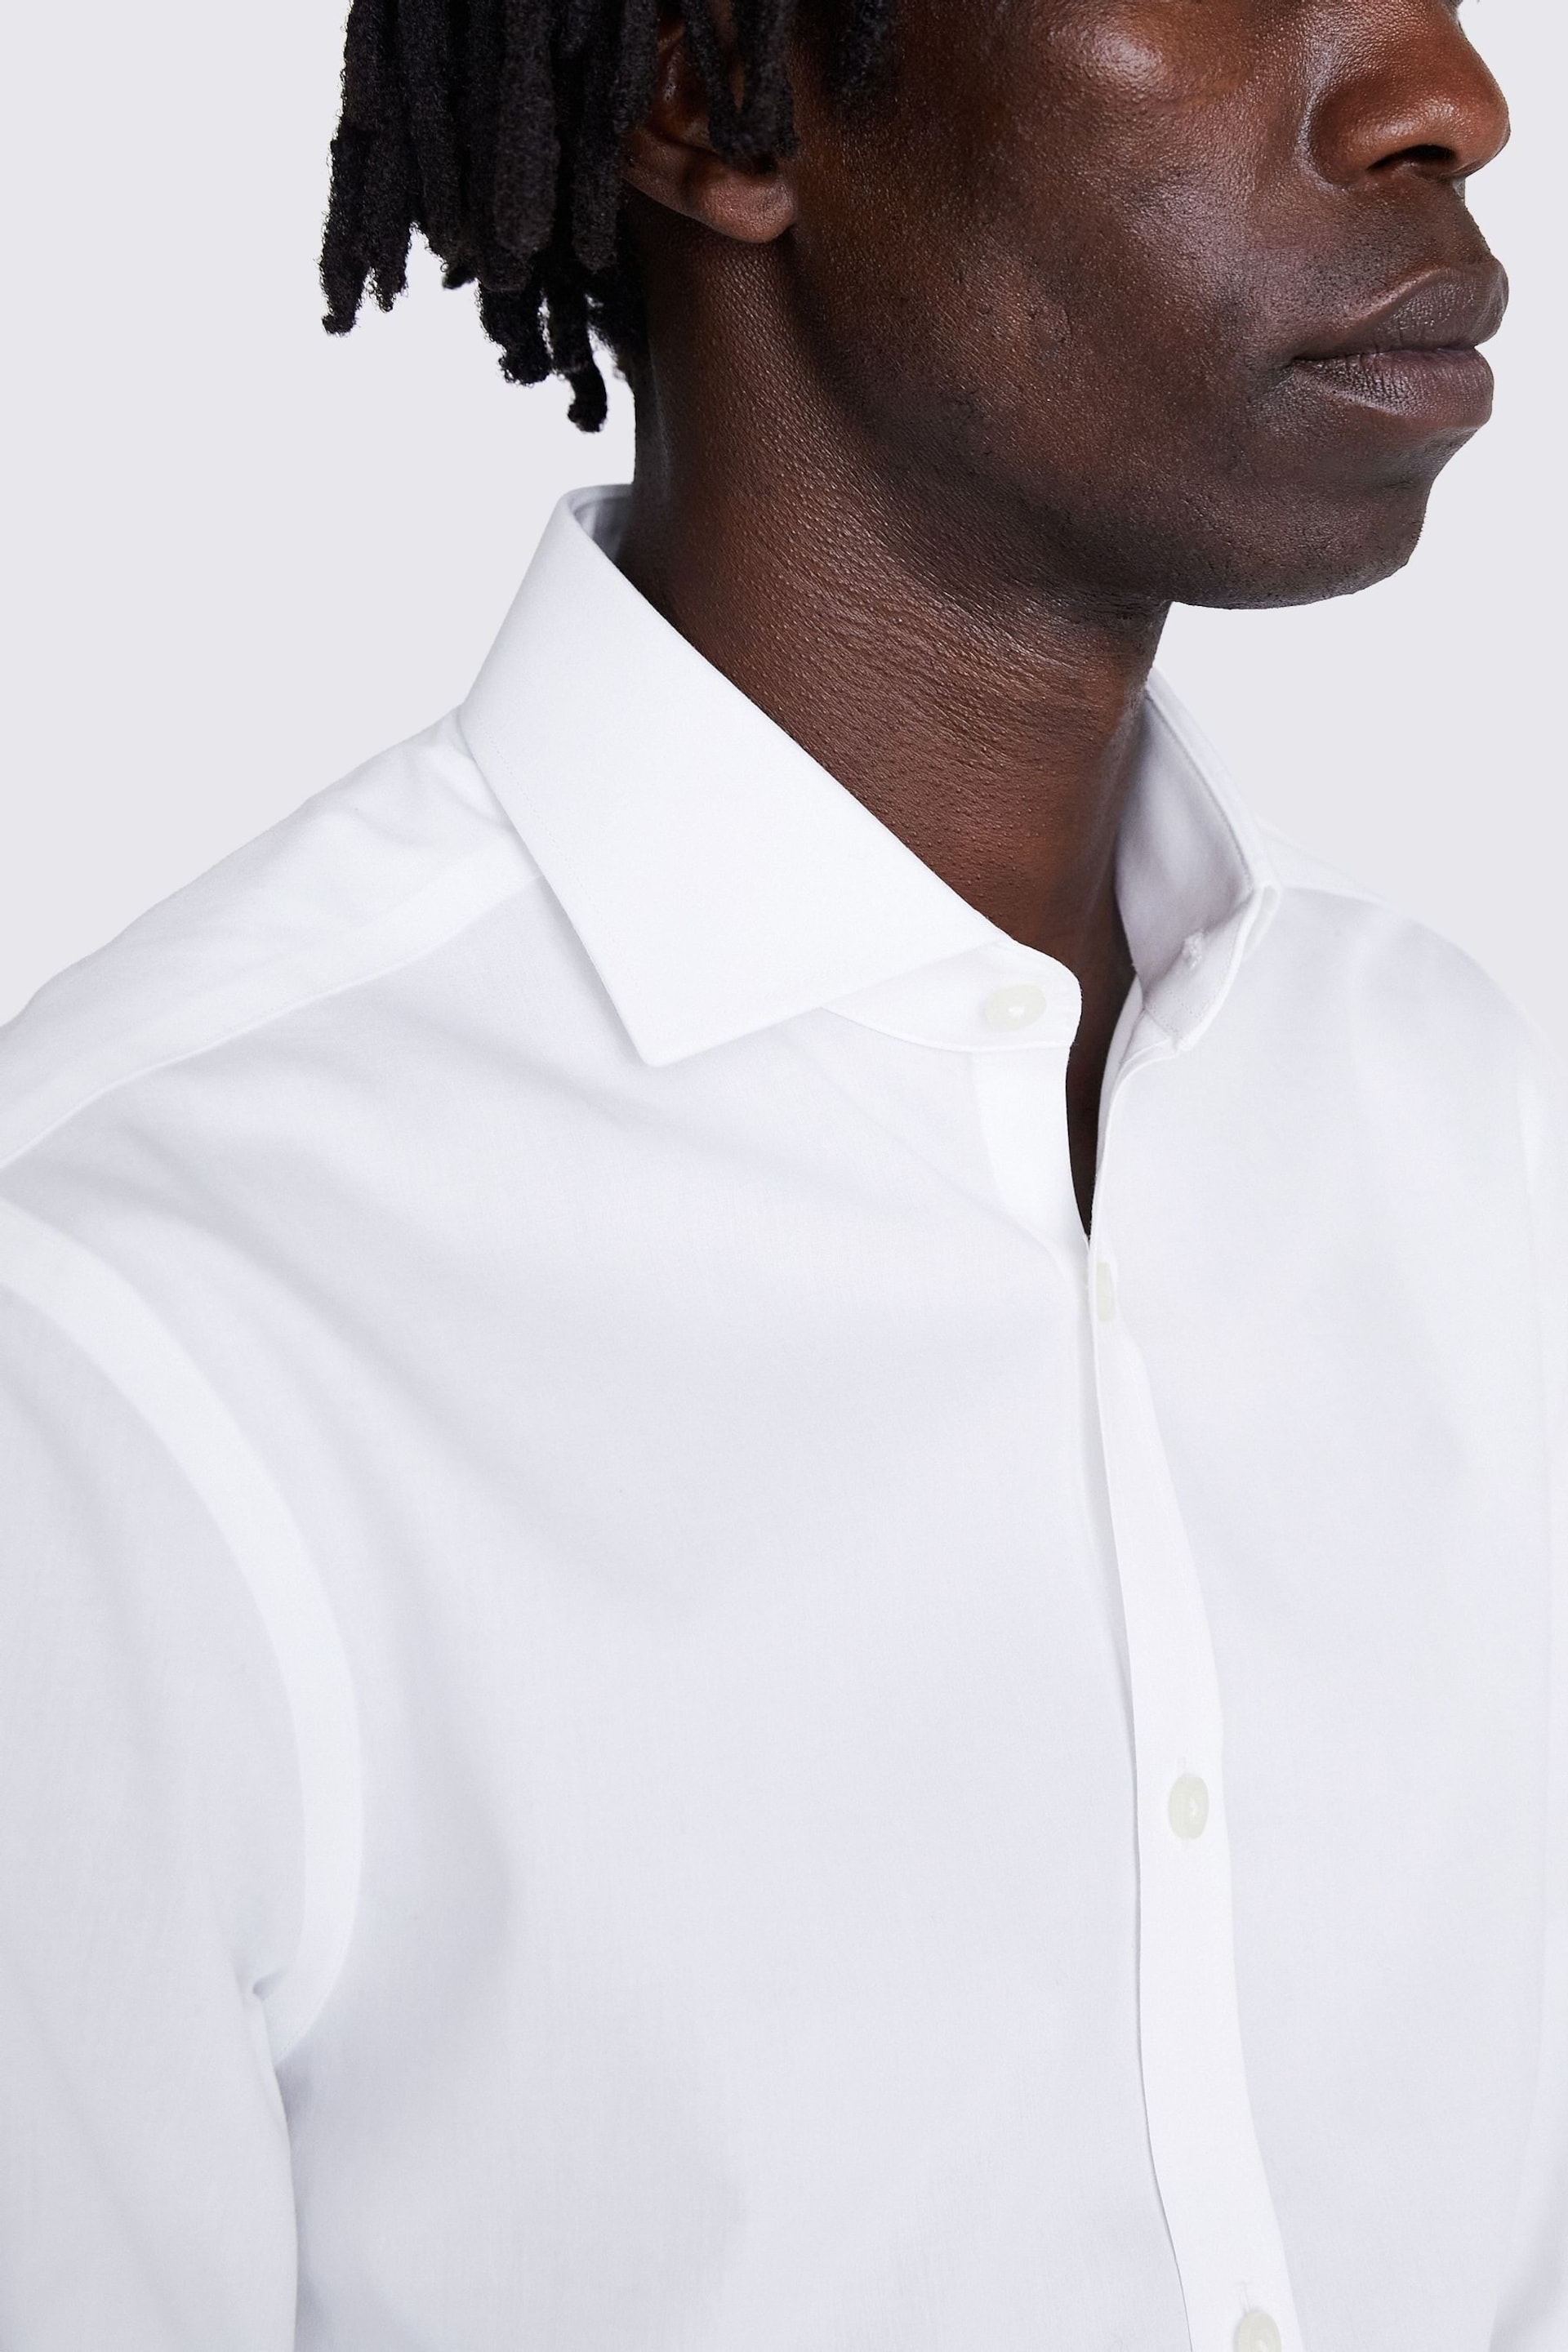 MOSS Slim Fit Poplin Zero Iron White Shirt - Image 3 of 4